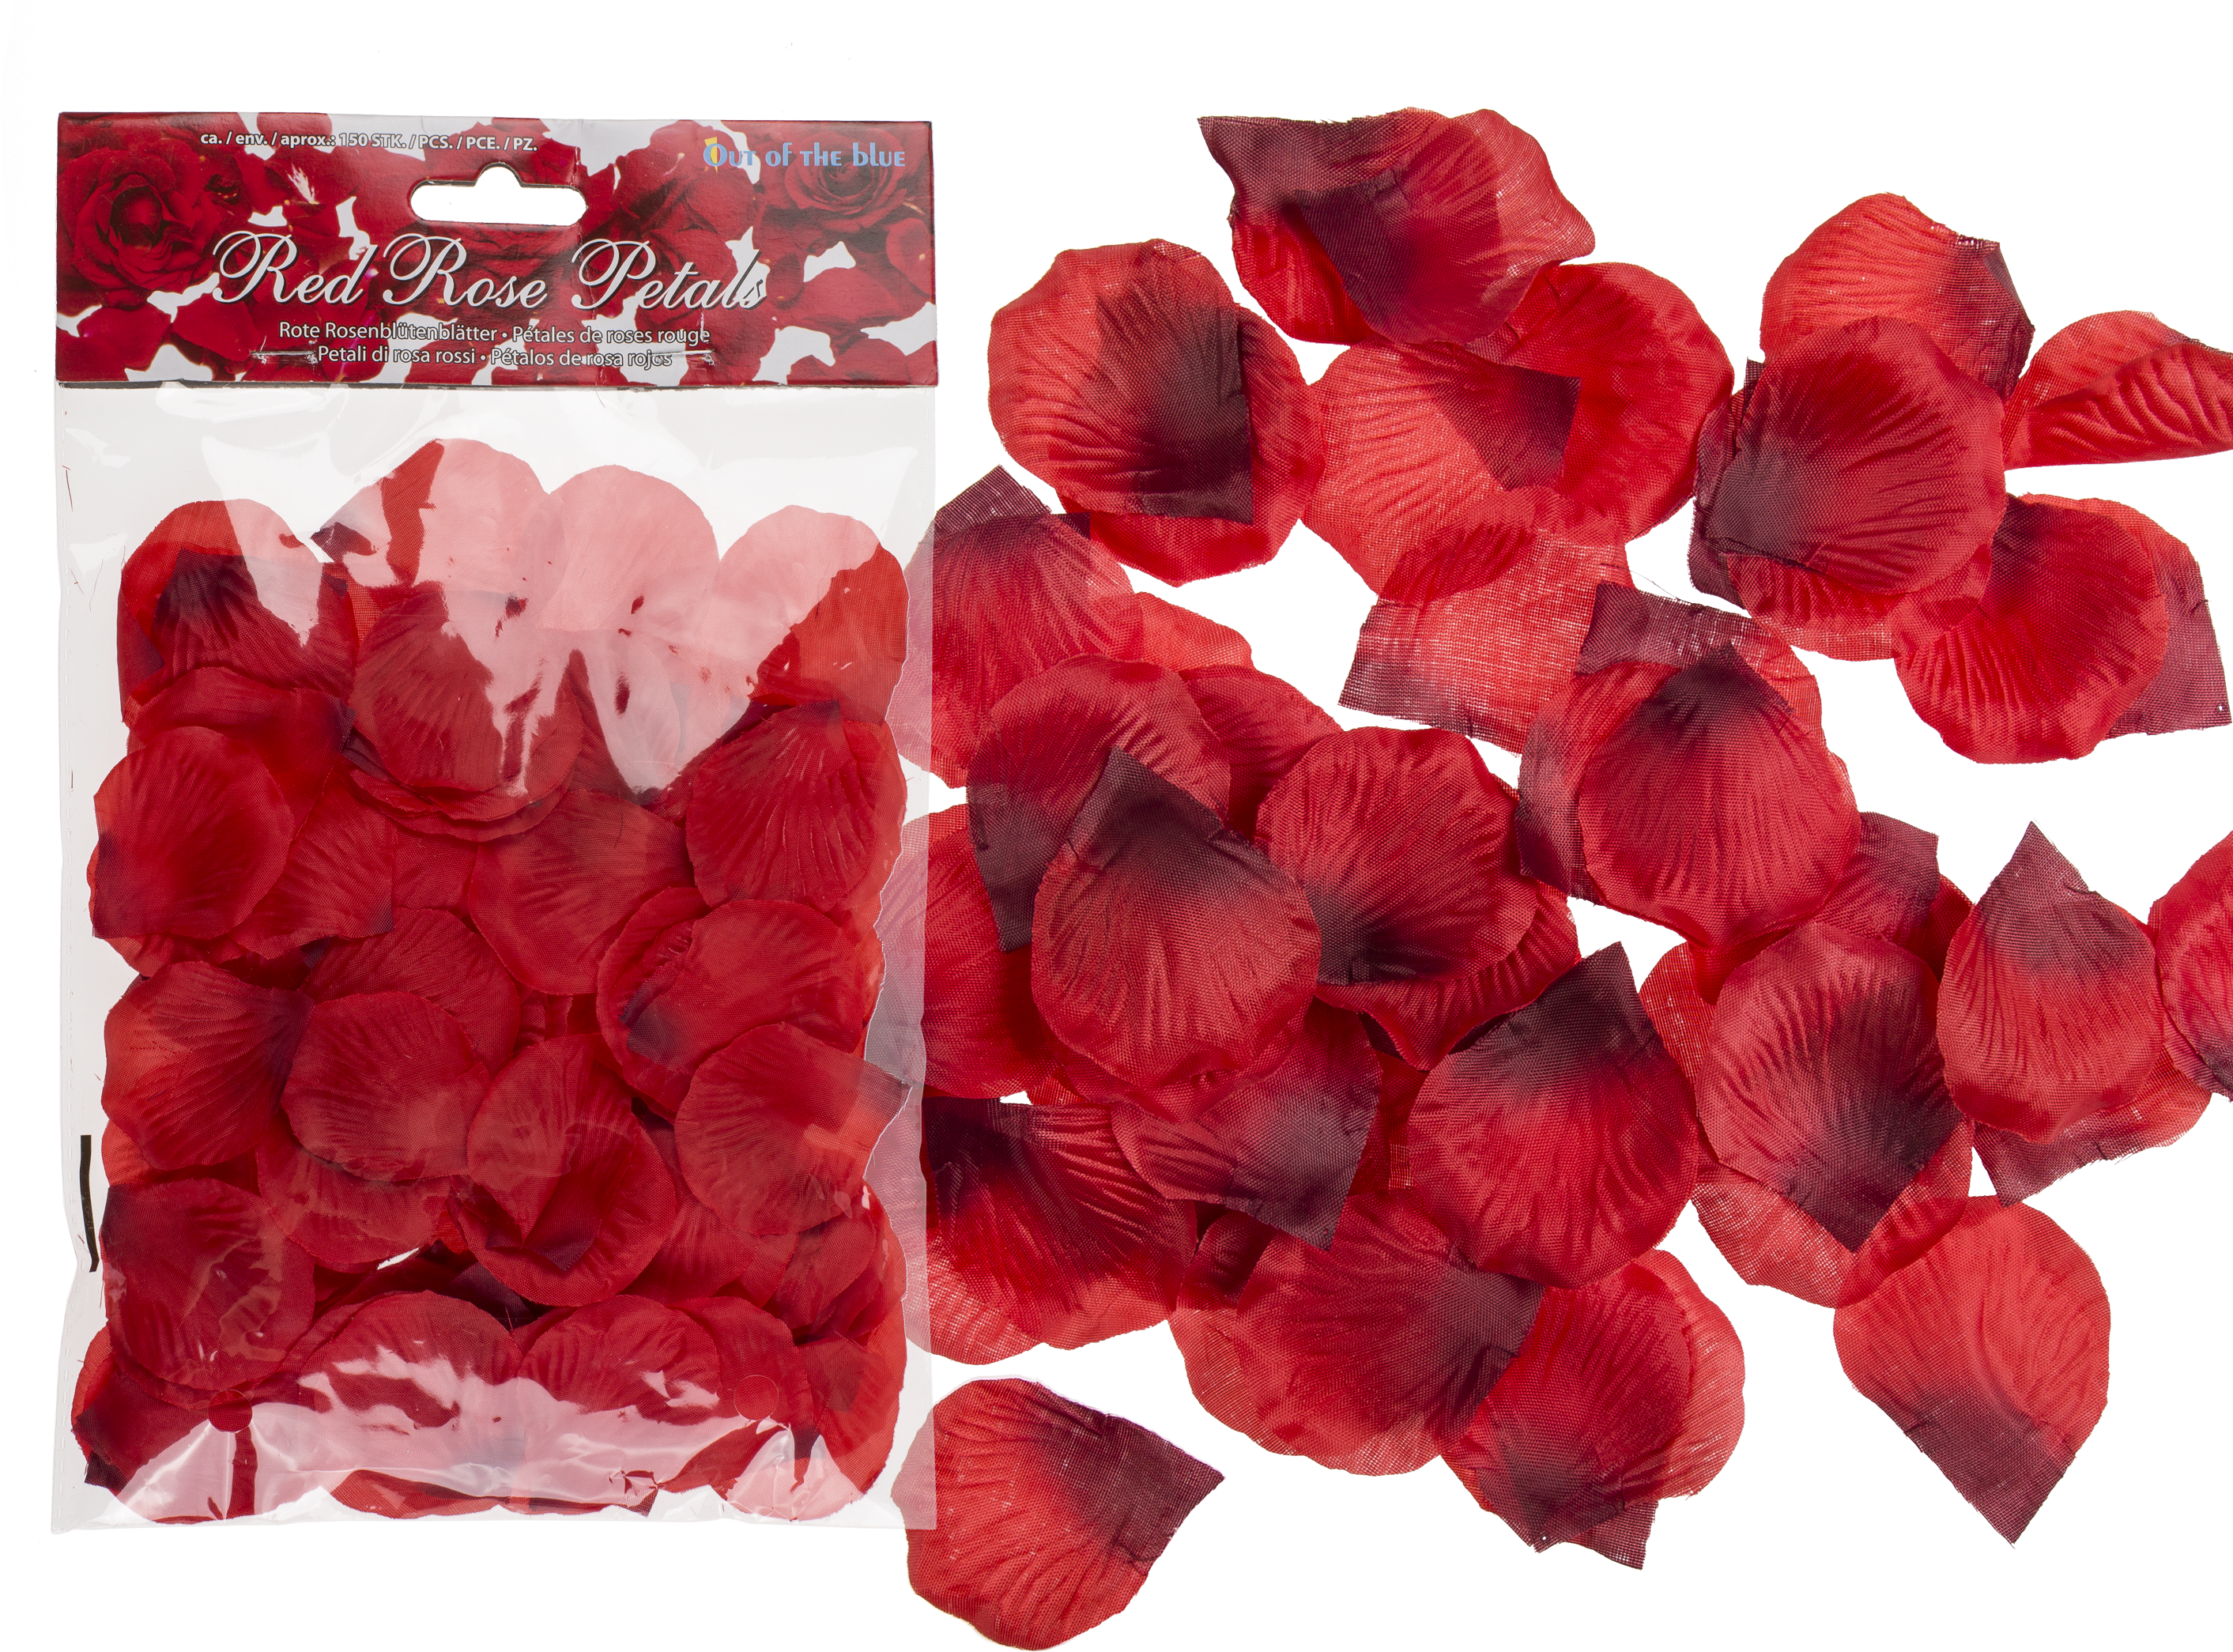 A Bag Of Red Rose Petals